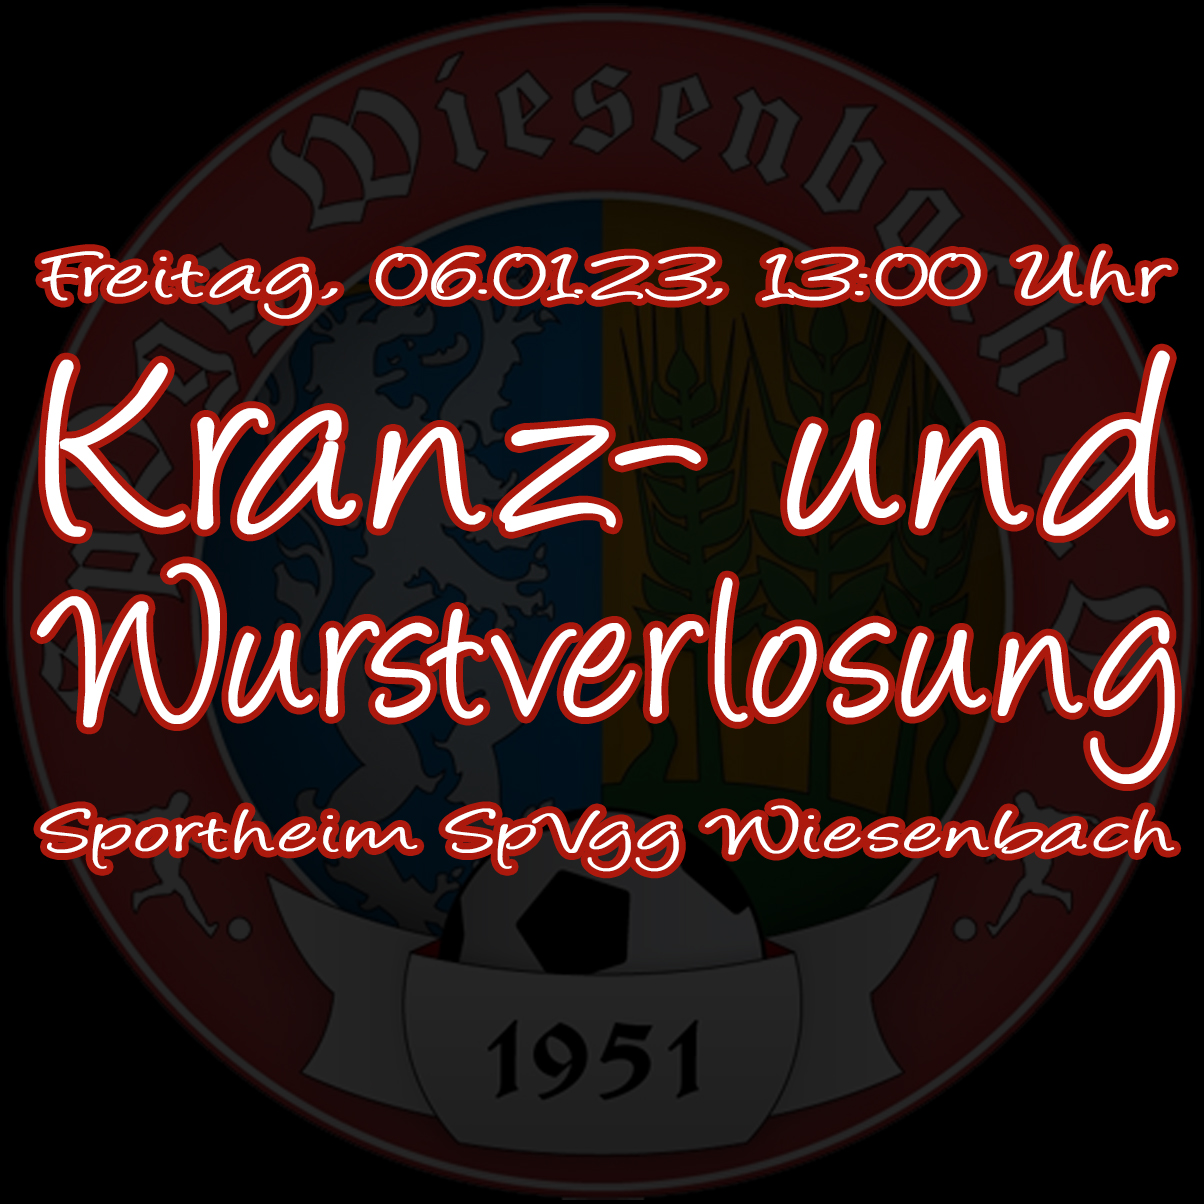 Kranz- und Wurstverlosung SpVgg Wiesenbach